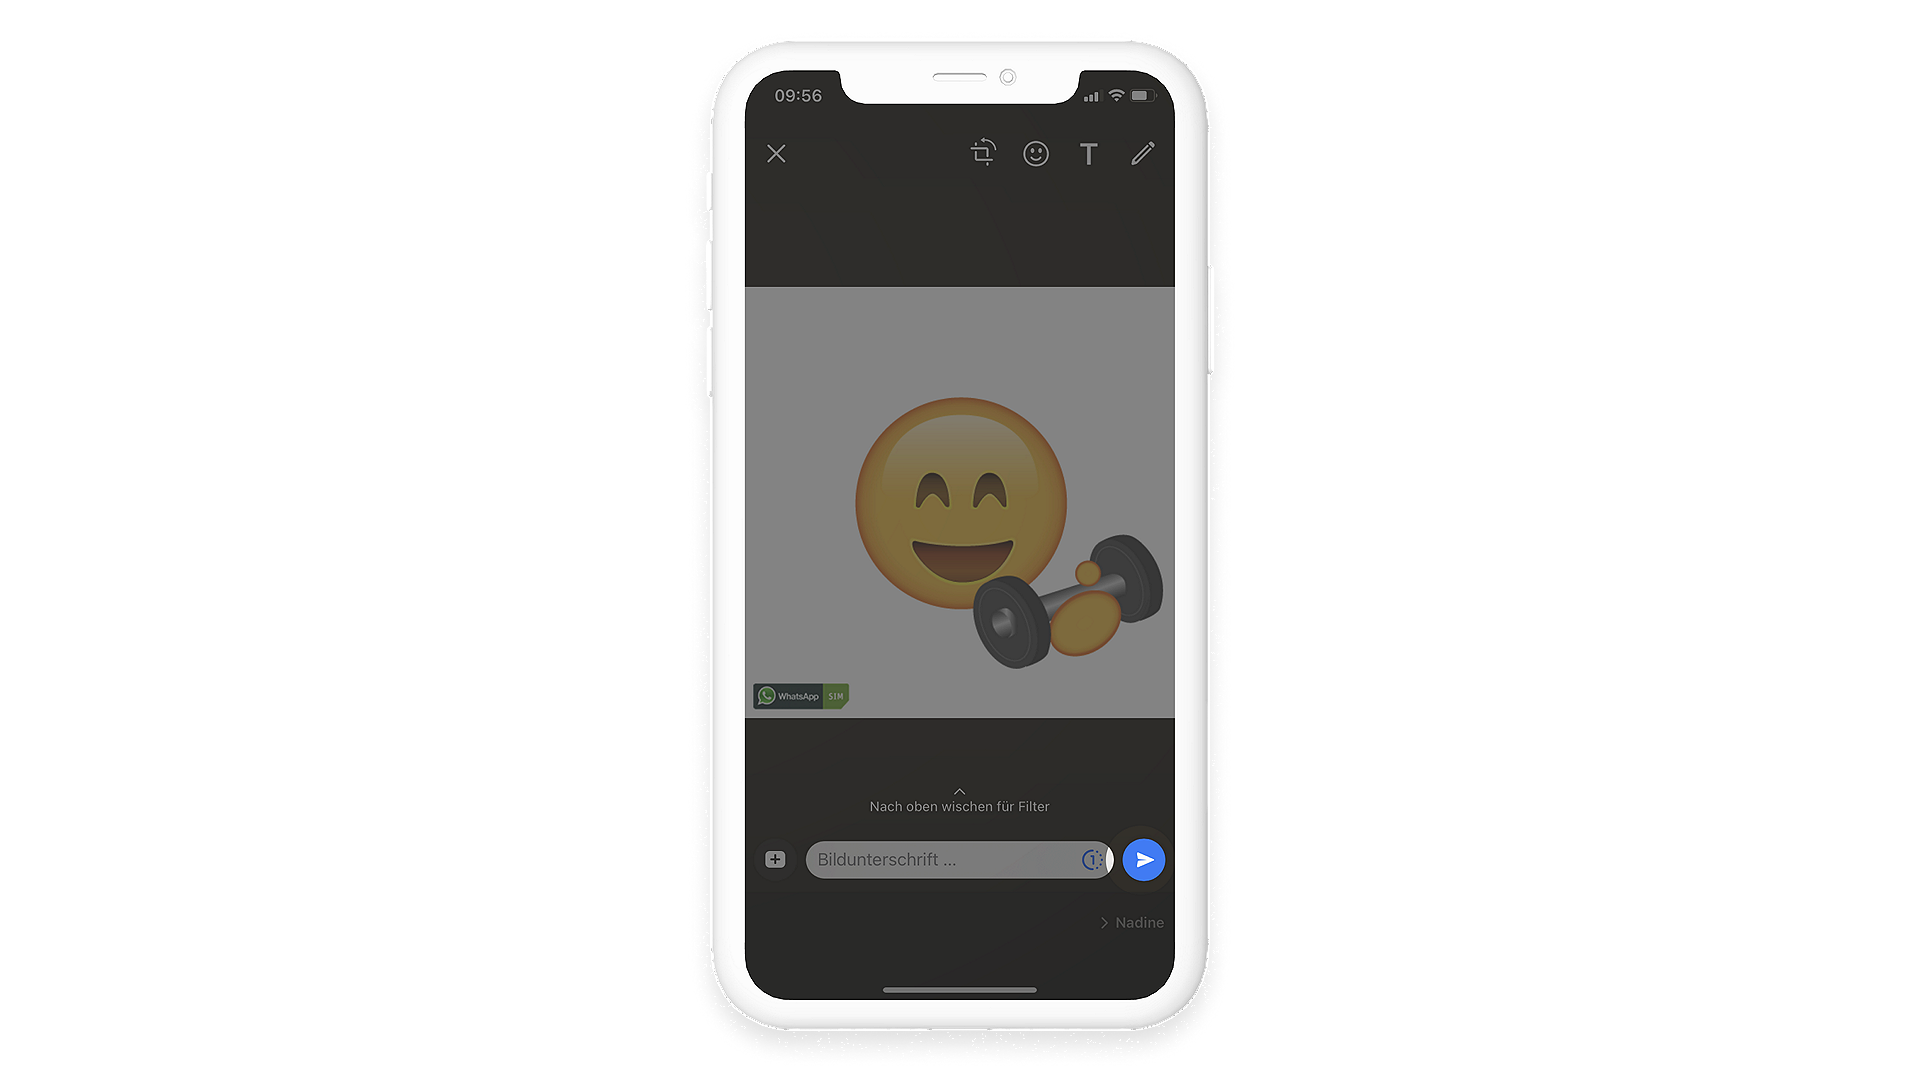 WhatsApp Chat Elvis-Emoji-Bild versenden, Pfeil rechts unten im Bild rot umrandet